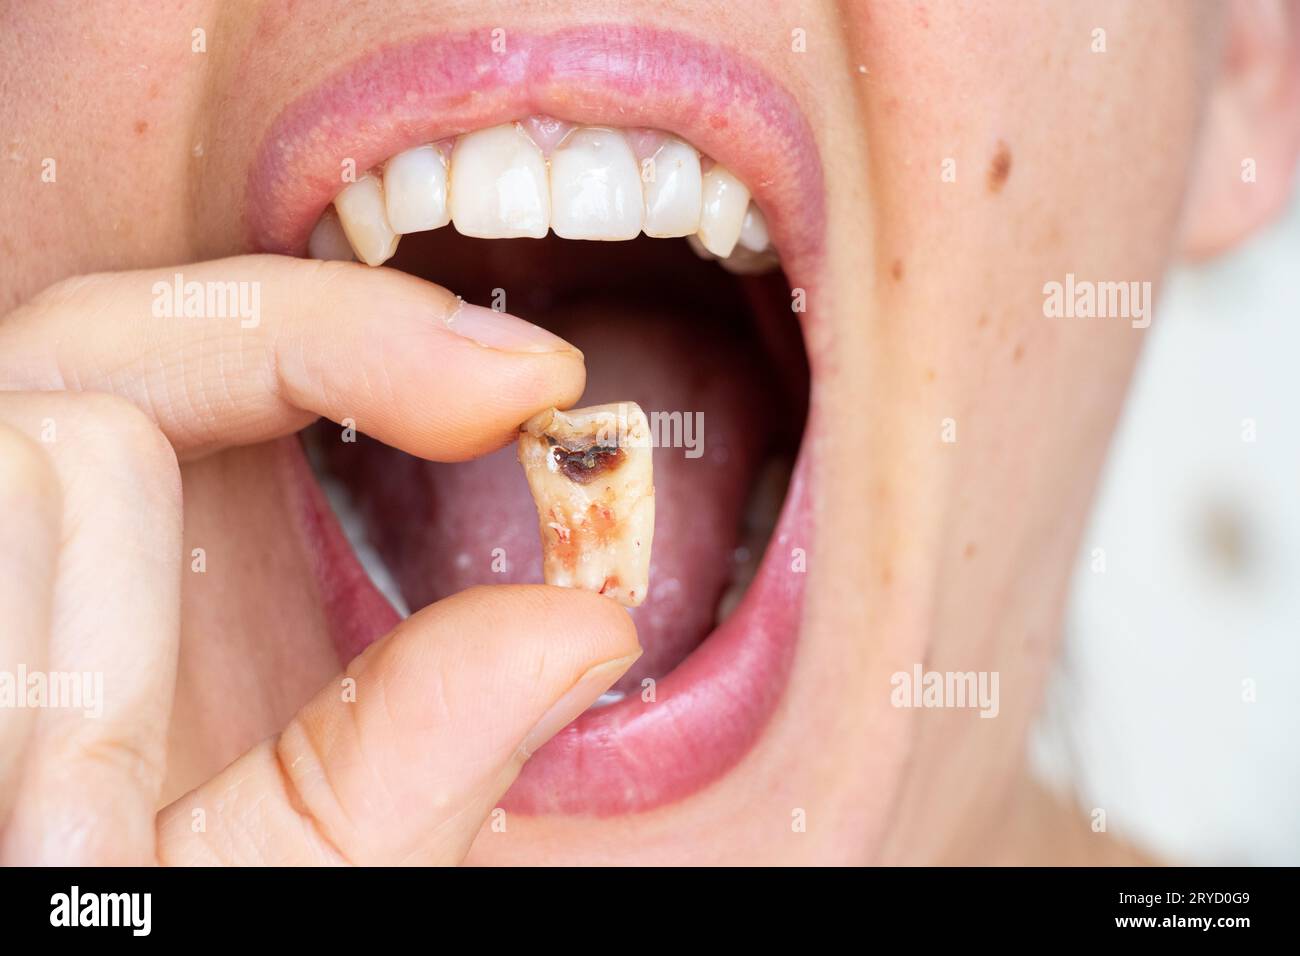 Une fille dans sa main tient une dent arrachée avec un trou noir au milieu de la dent gros plan, une dent malade dans sa main après le retrait qui pourrait n Banque D'Images